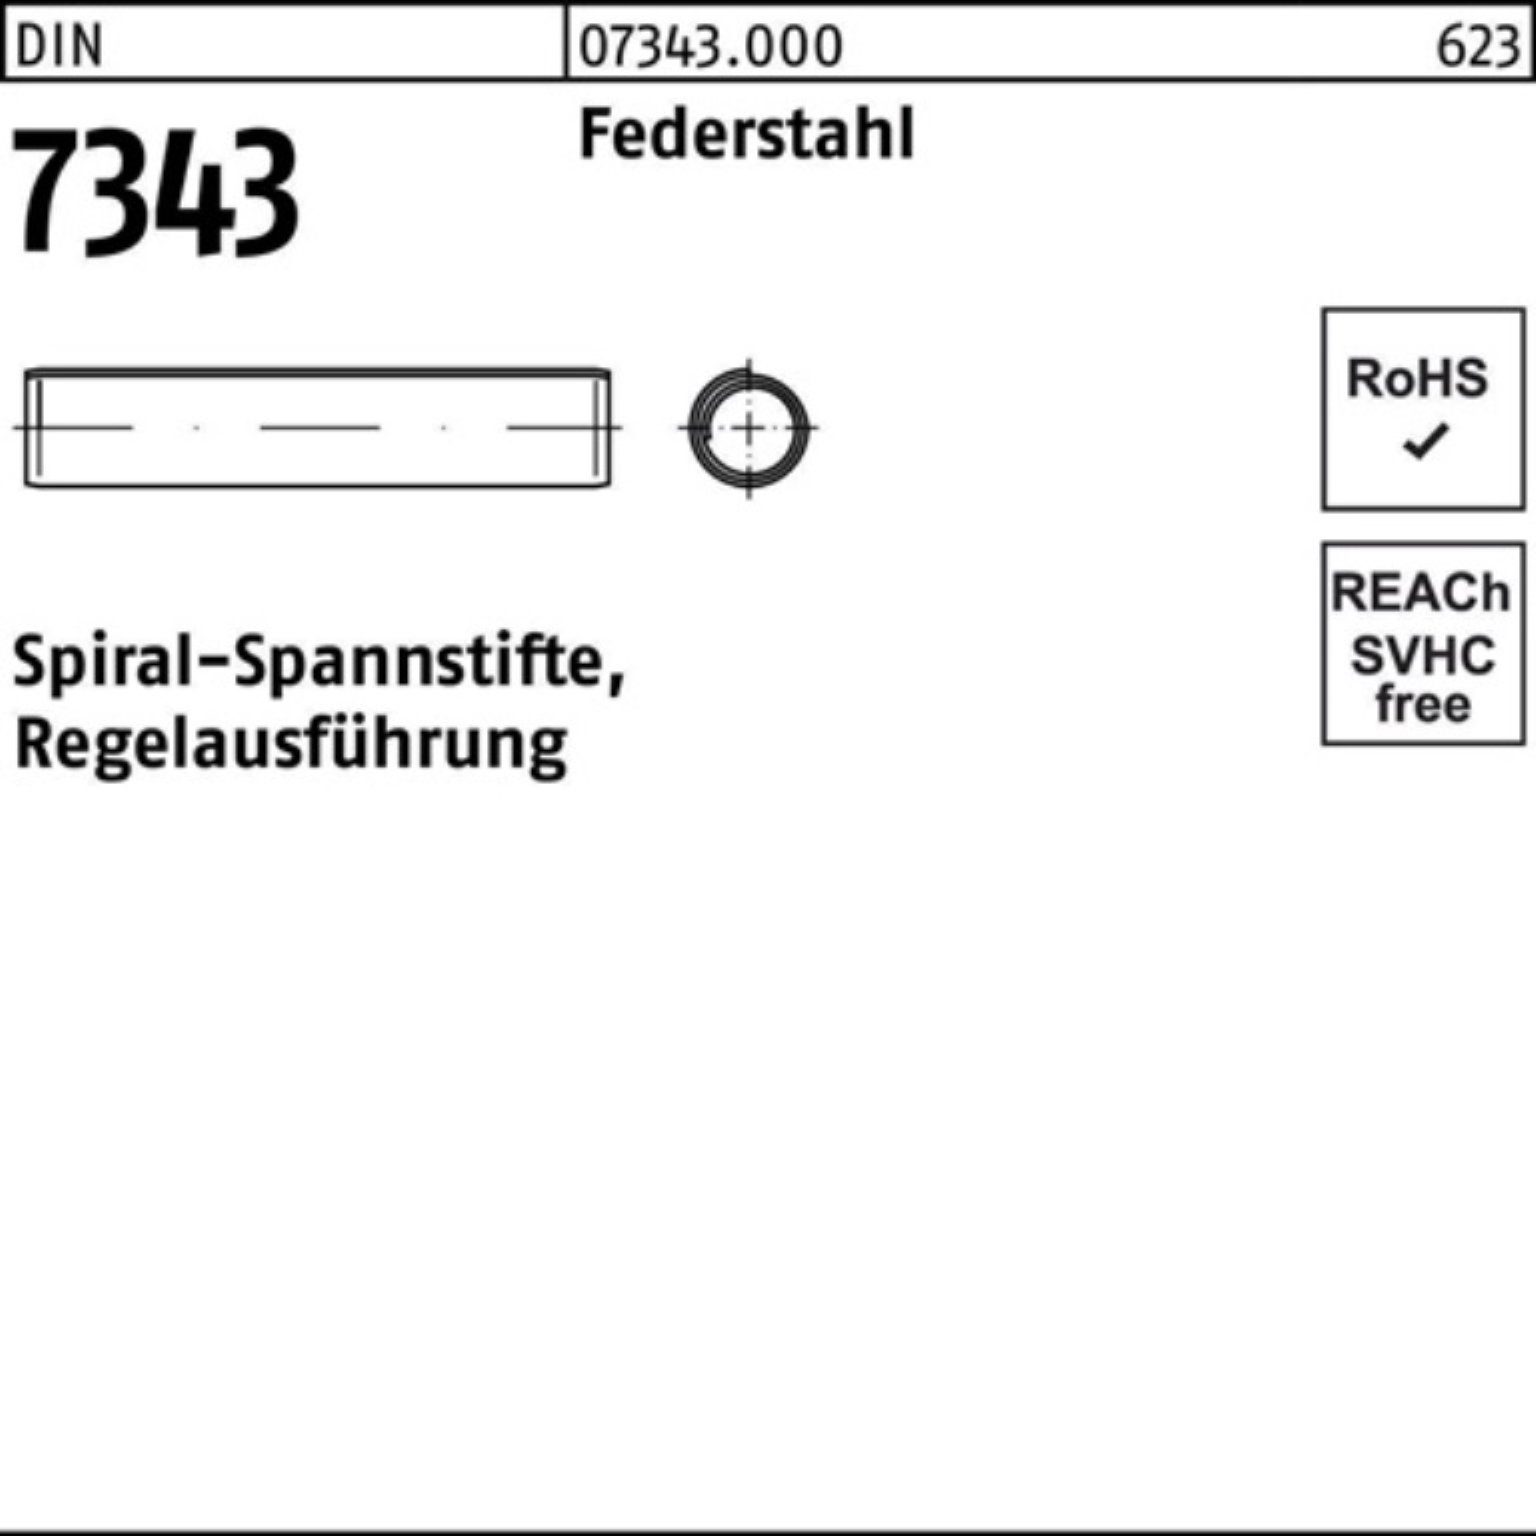 3x Reyher 1000er Spiralspannstift 7343/ISO 8750 Federstahl Spannstift Pack DIN Regela 14